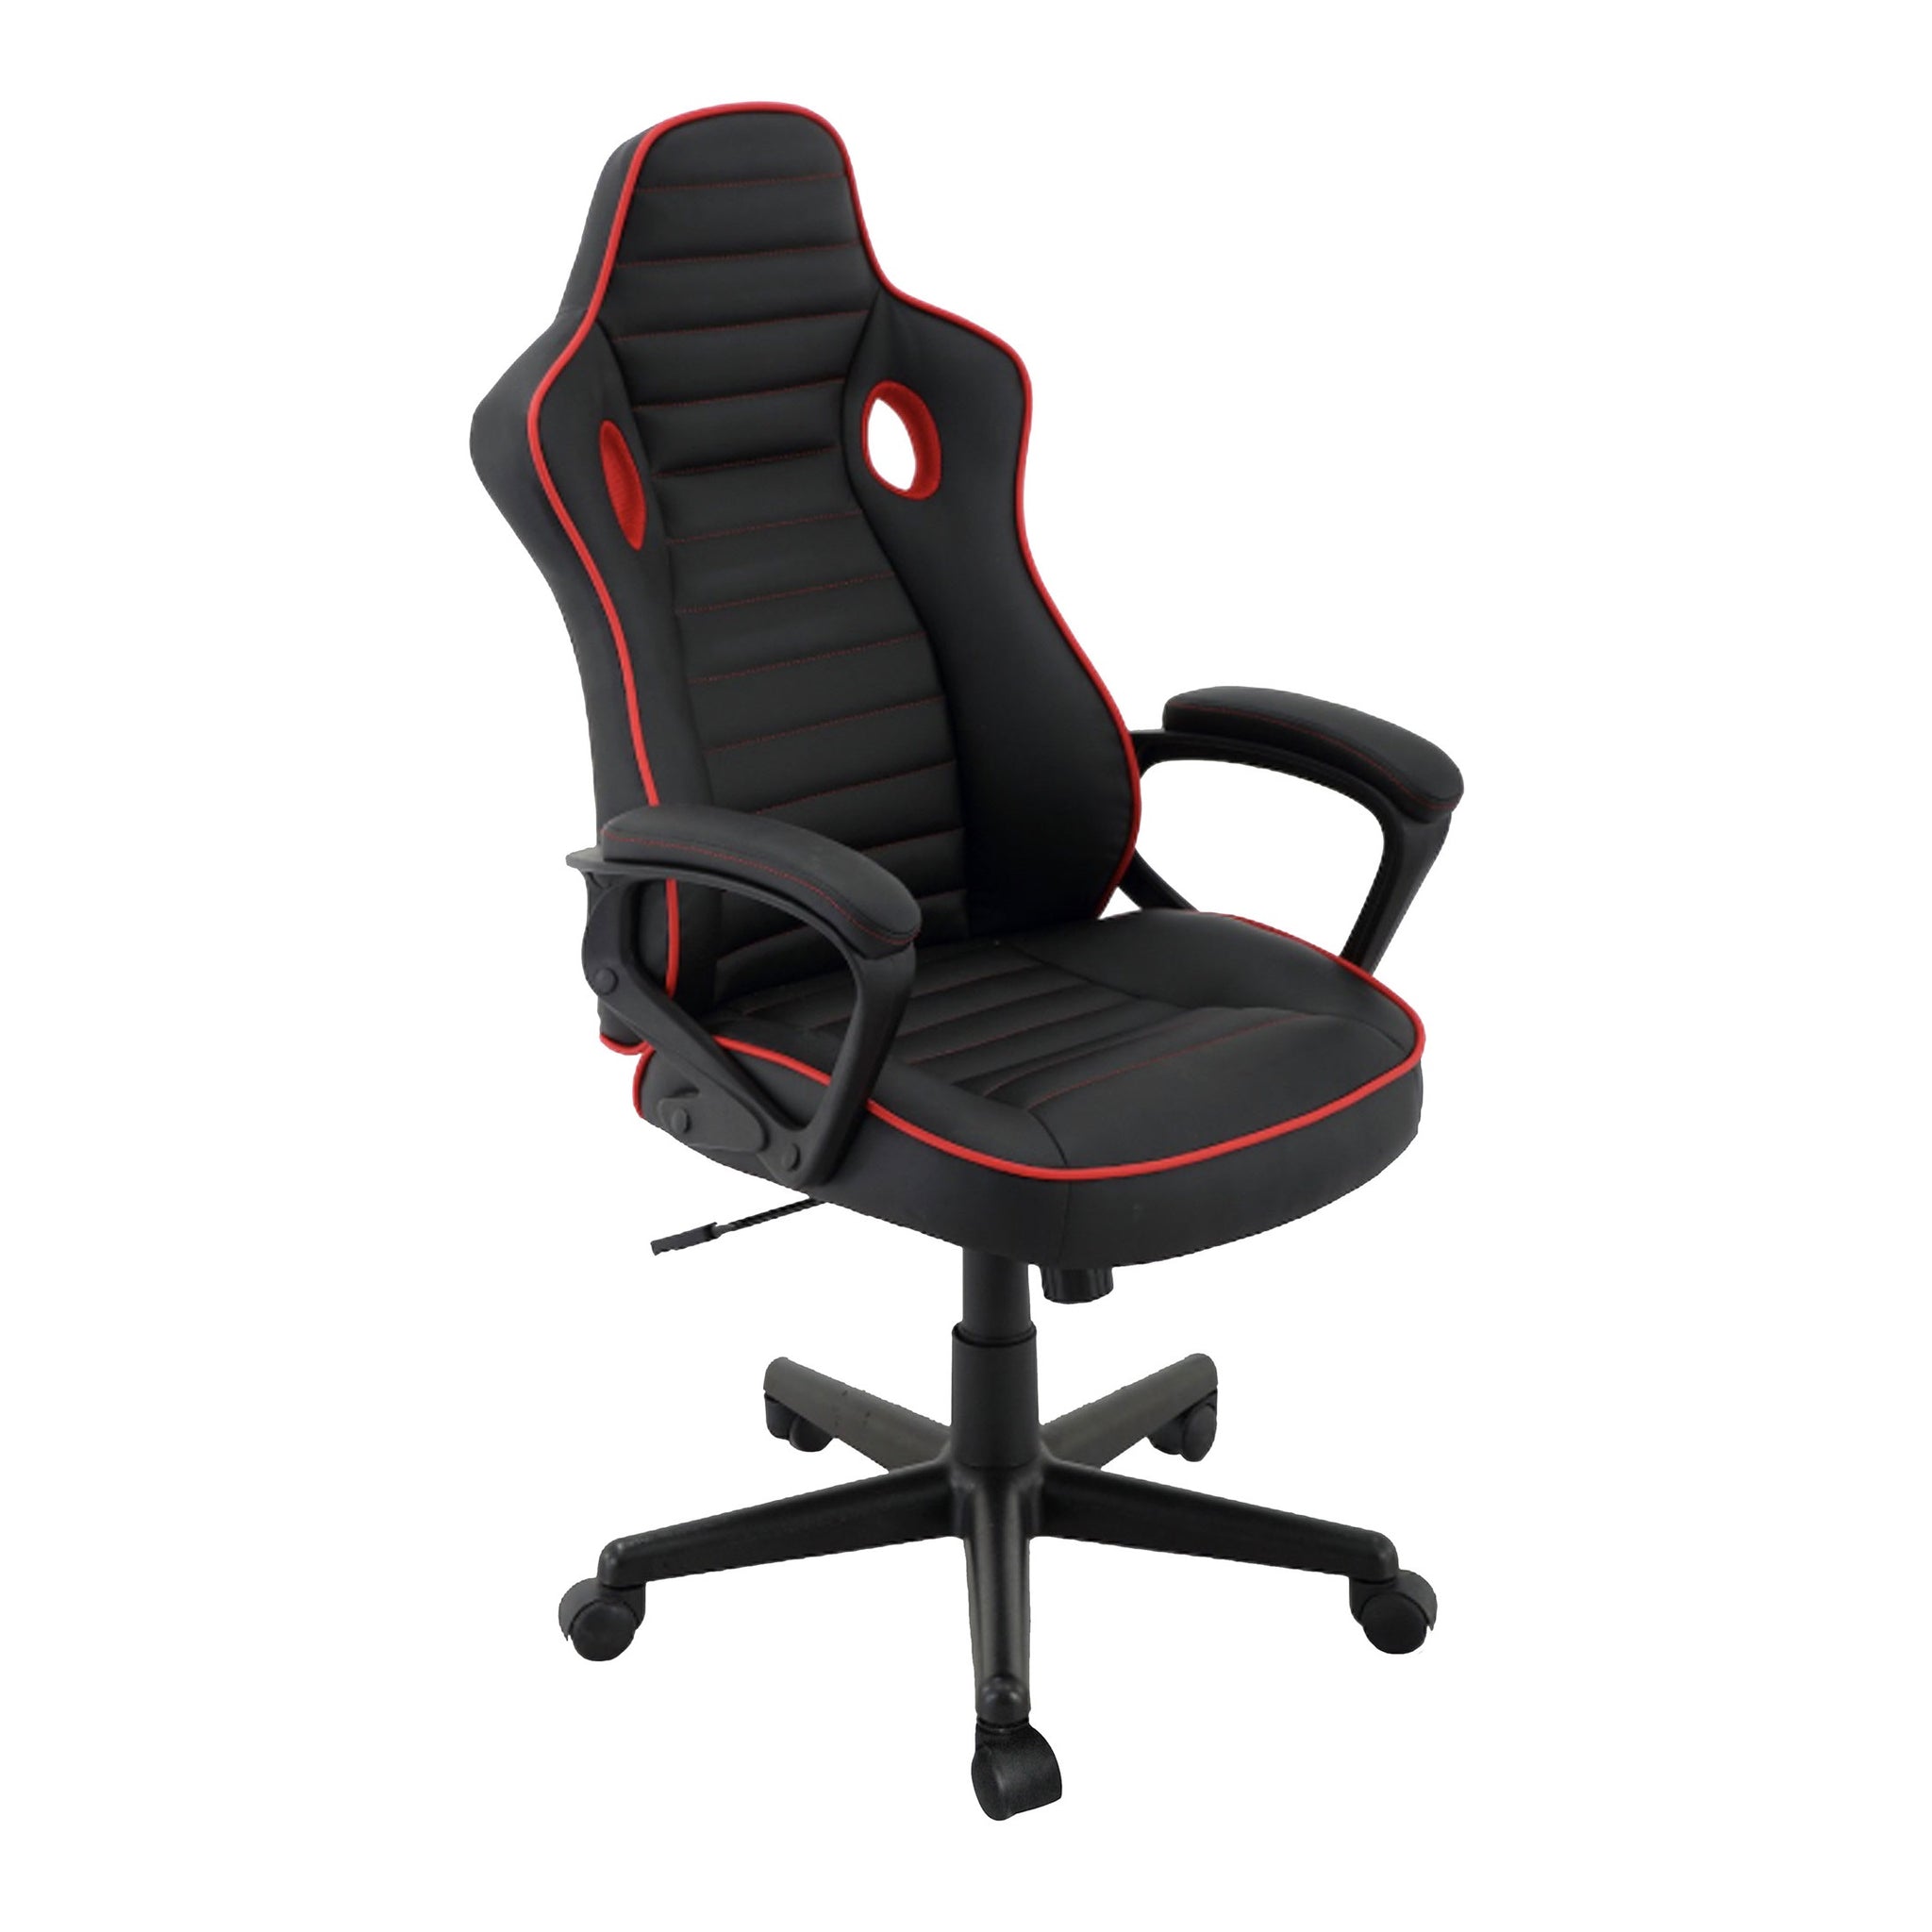 Sillón Gamer-003 respaldo y asiento tapizado leather negro con base nylon